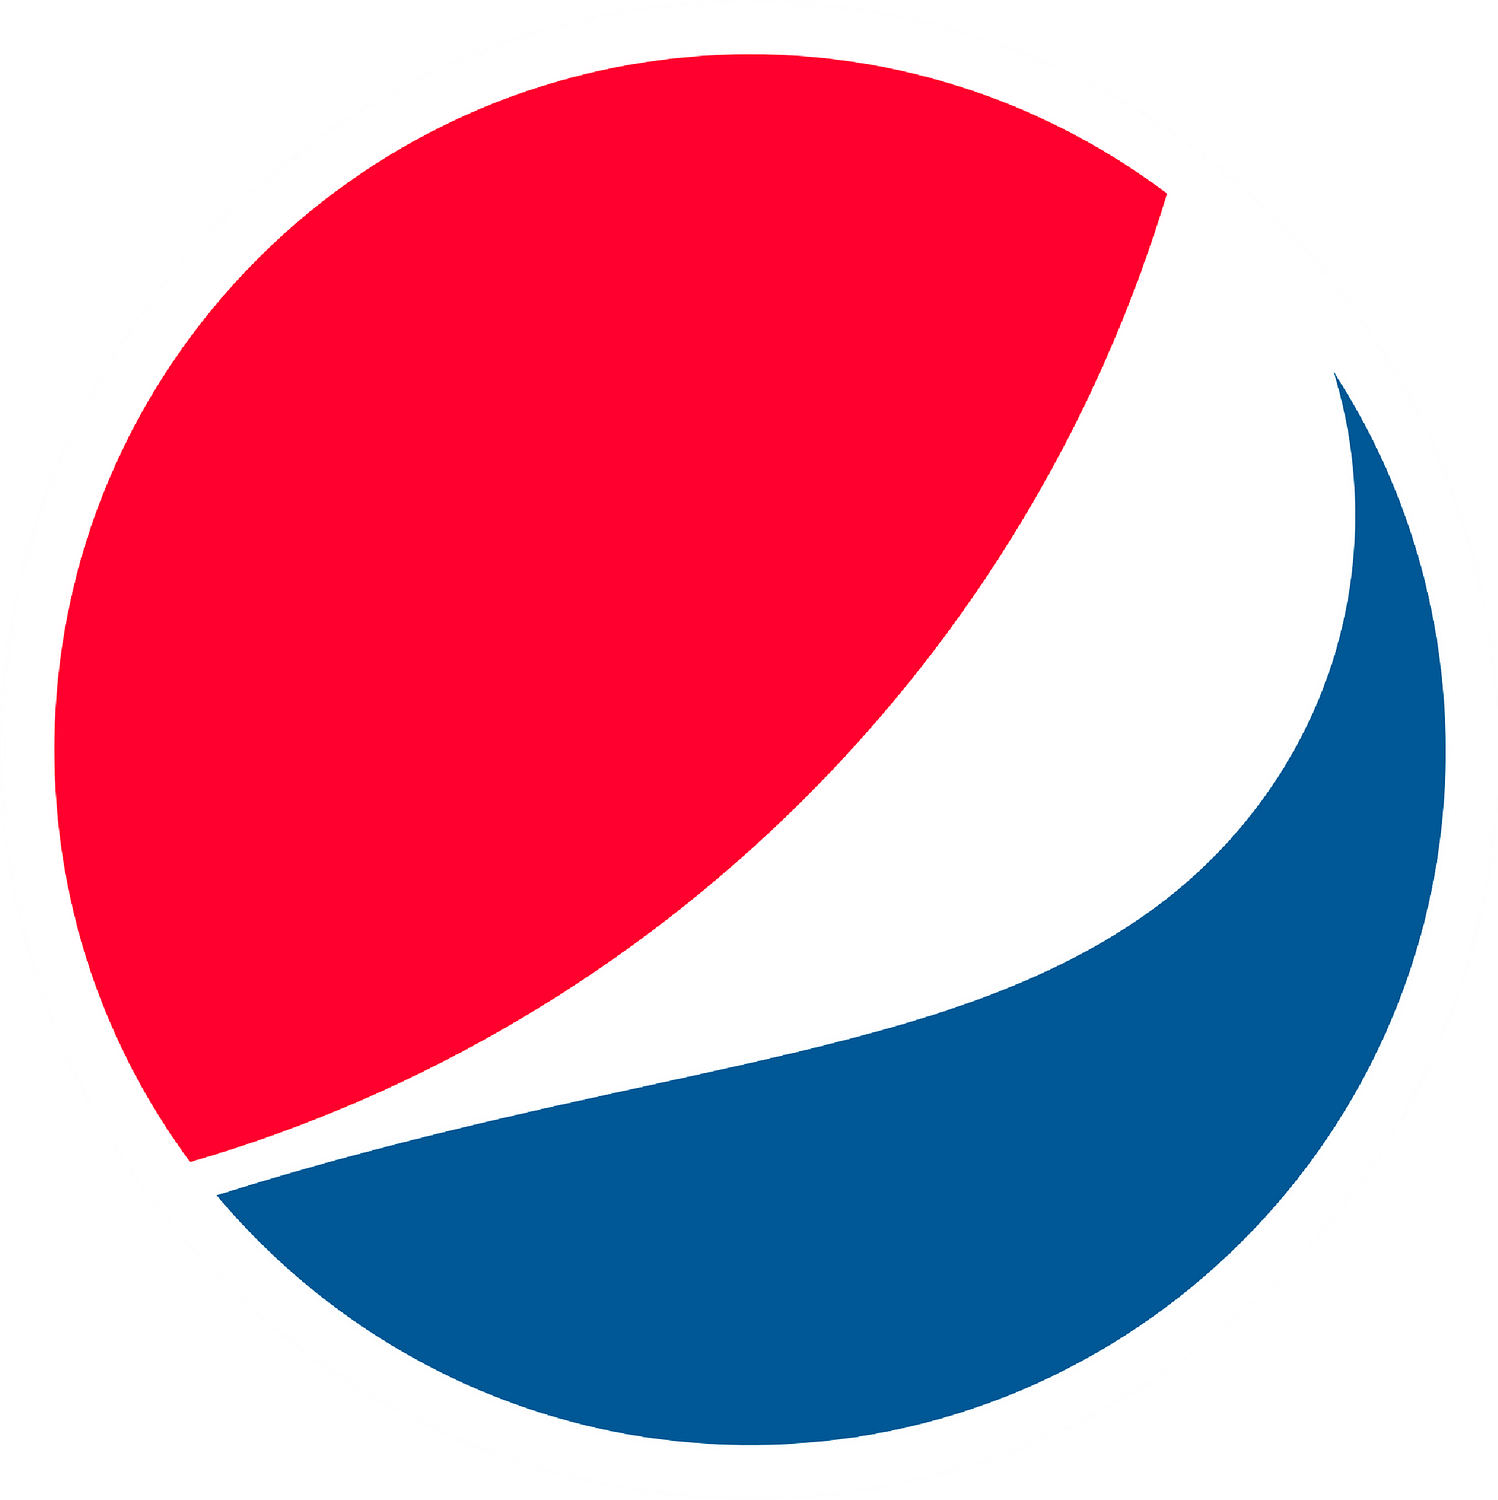 百事可乐徽标是抽象徽标